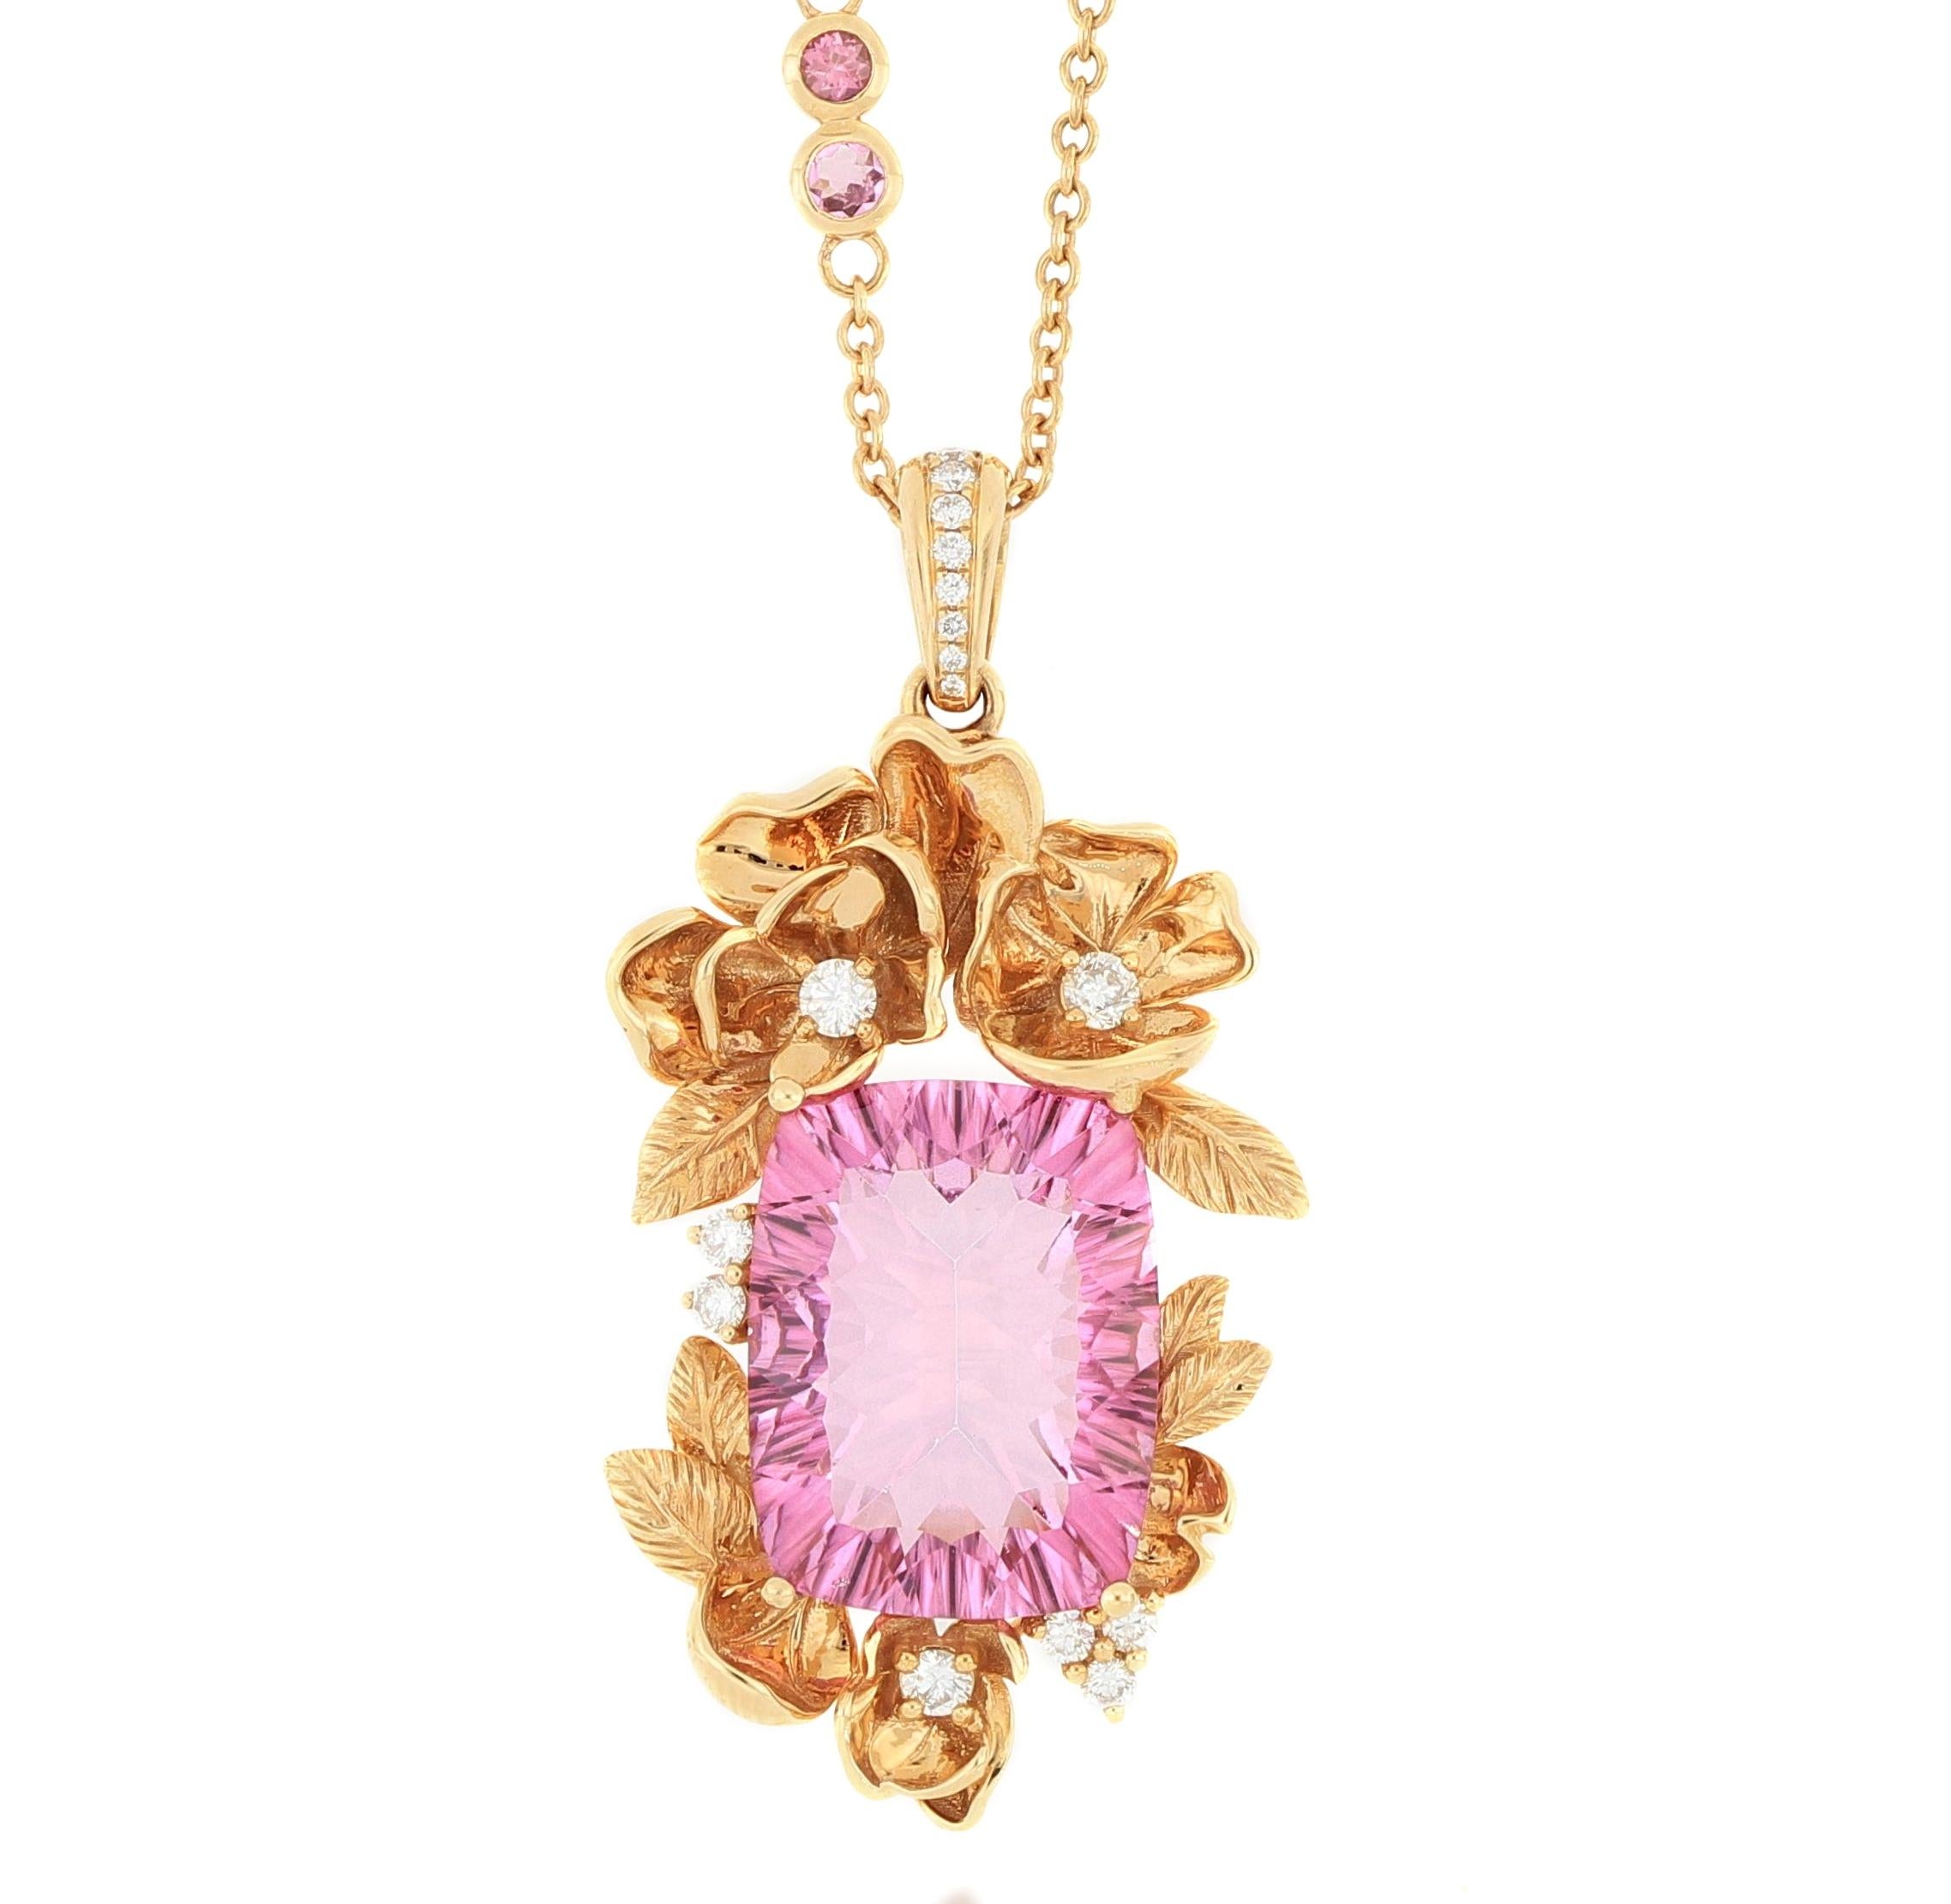 Finement détaillé  pendentif en forme de feuilles de fleurs serti d'une topaze rose vif accrocheuse pesant 12,7 carats et de diamants brillants, monté en or rose 18 carats. Il est accompagné d'un collier orné d'un diamant brillant et d'une